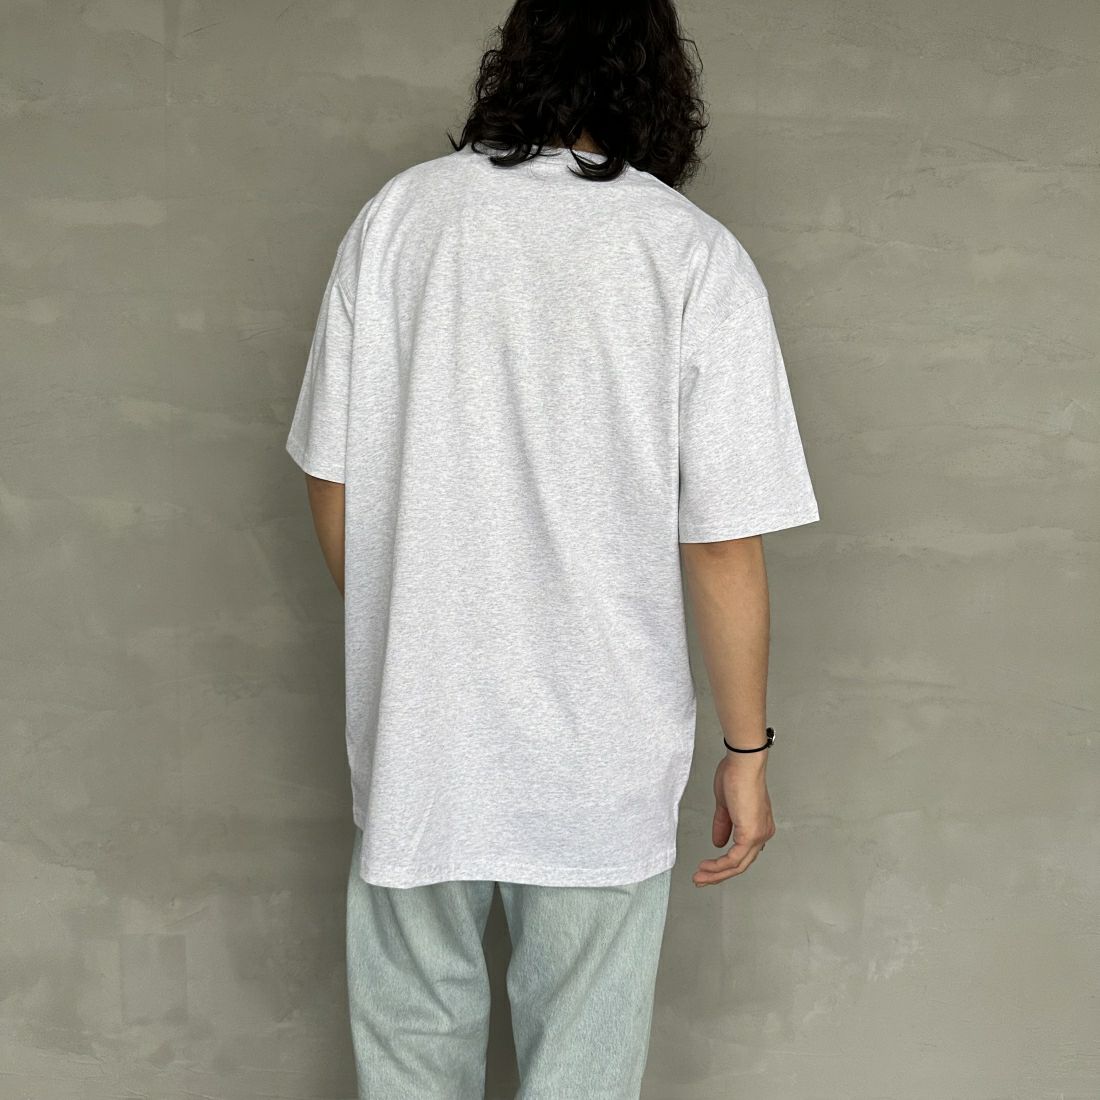 carhartt WIP [カーハートダブリューアイピー] ショートスリーブアメリカンスクリプトTシャツ [I029956] WHITE &&モデル身長：173cm 着用サイズ：XL&&